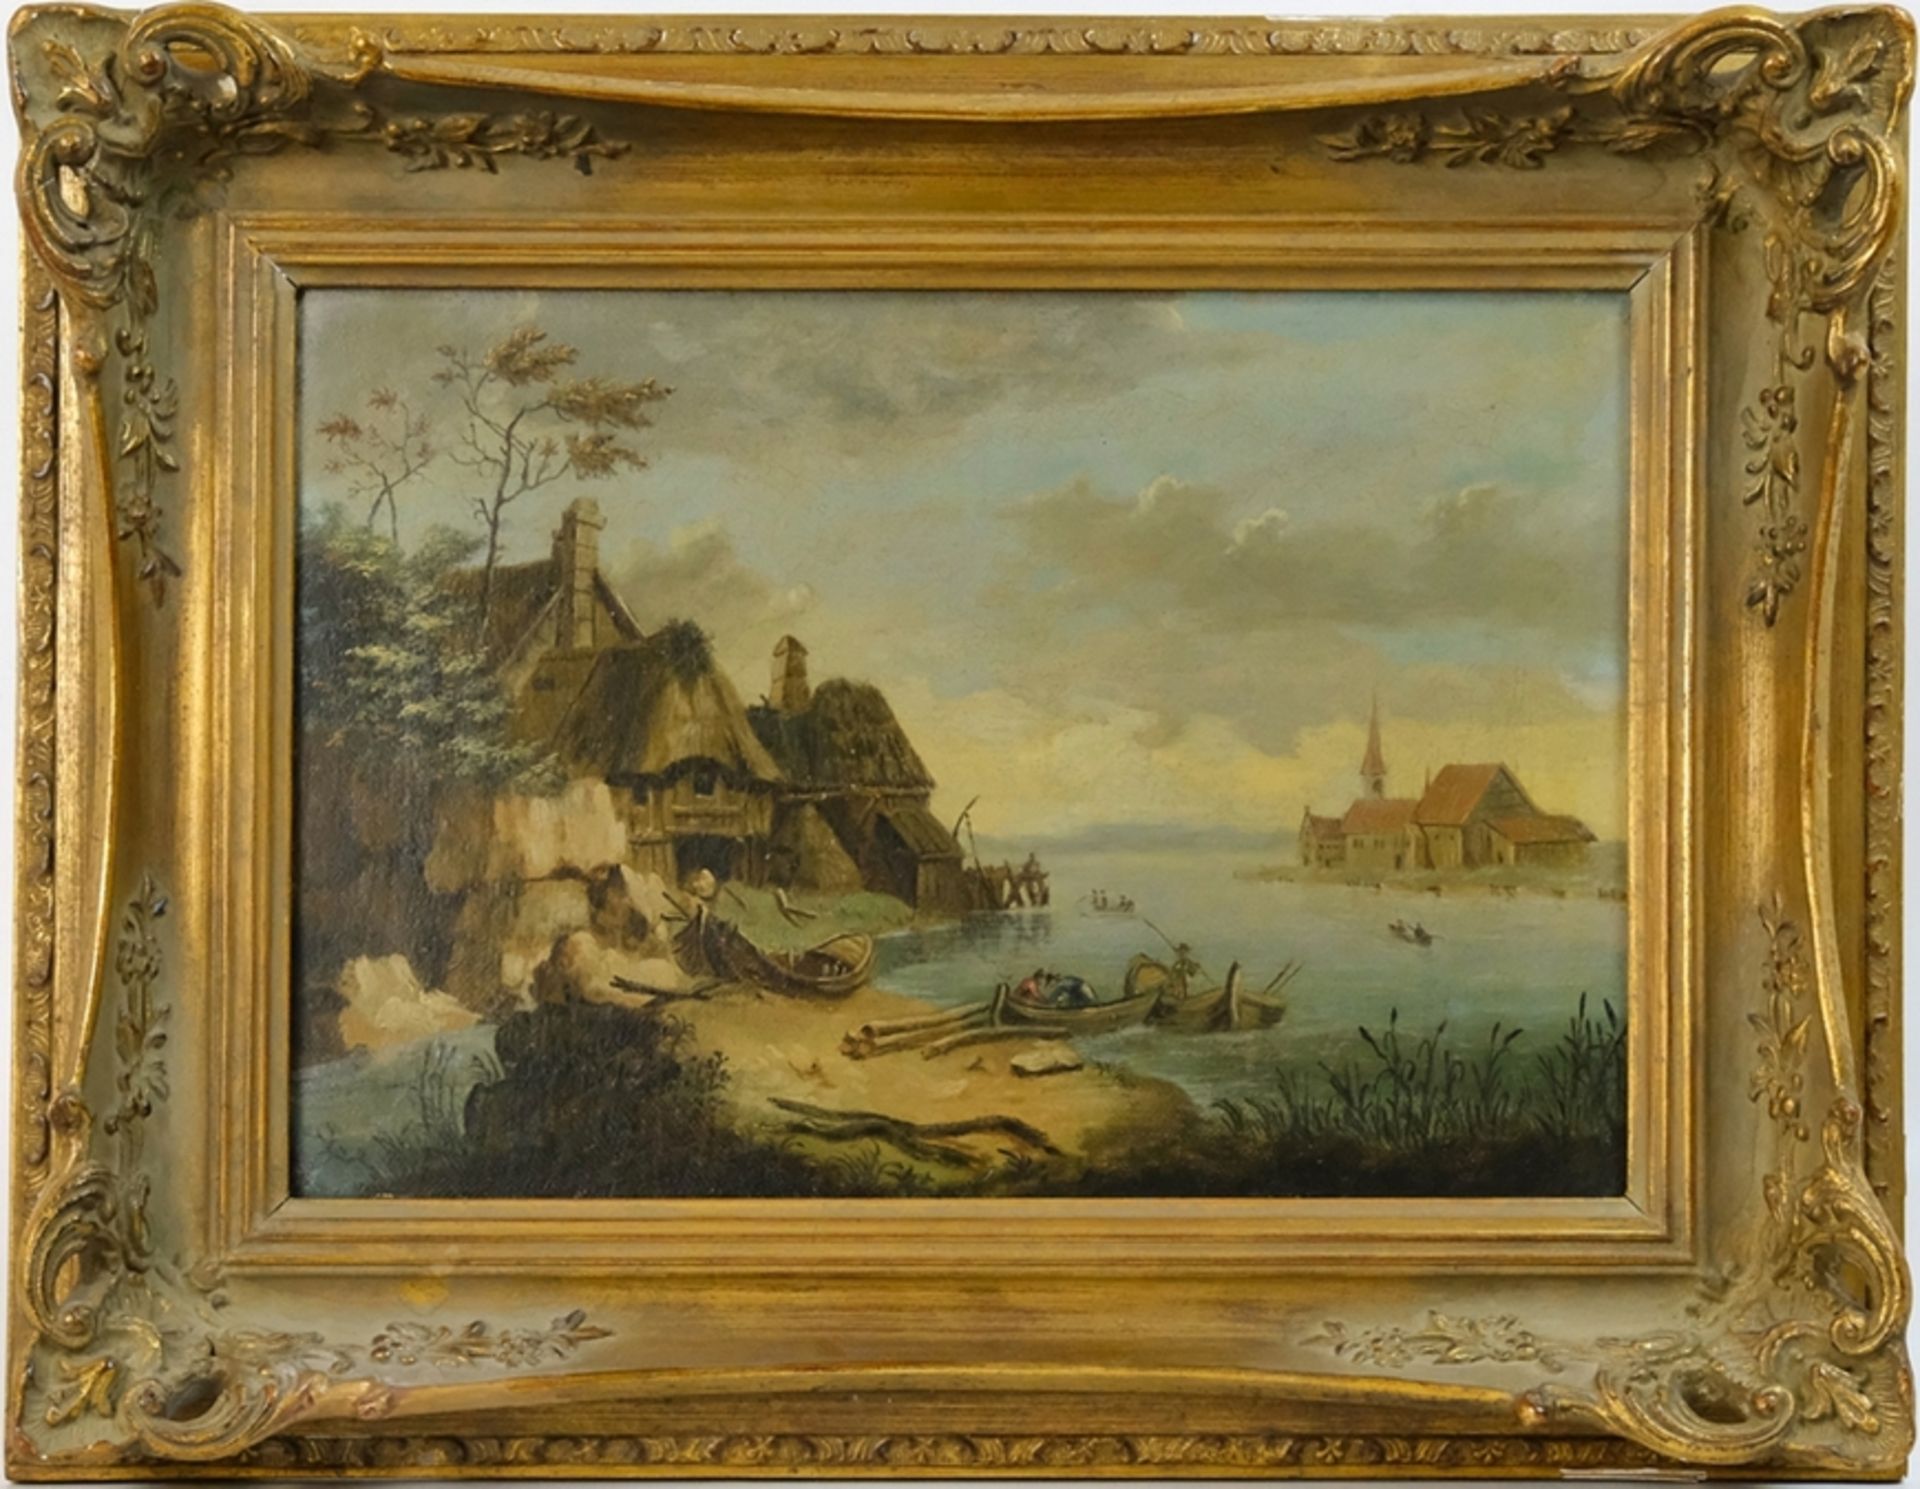 Unbekannt (19. Jahrhundert) Am Niederländischen Biesbosch, Öl auf Leinwand. - Bild 2 aus 3